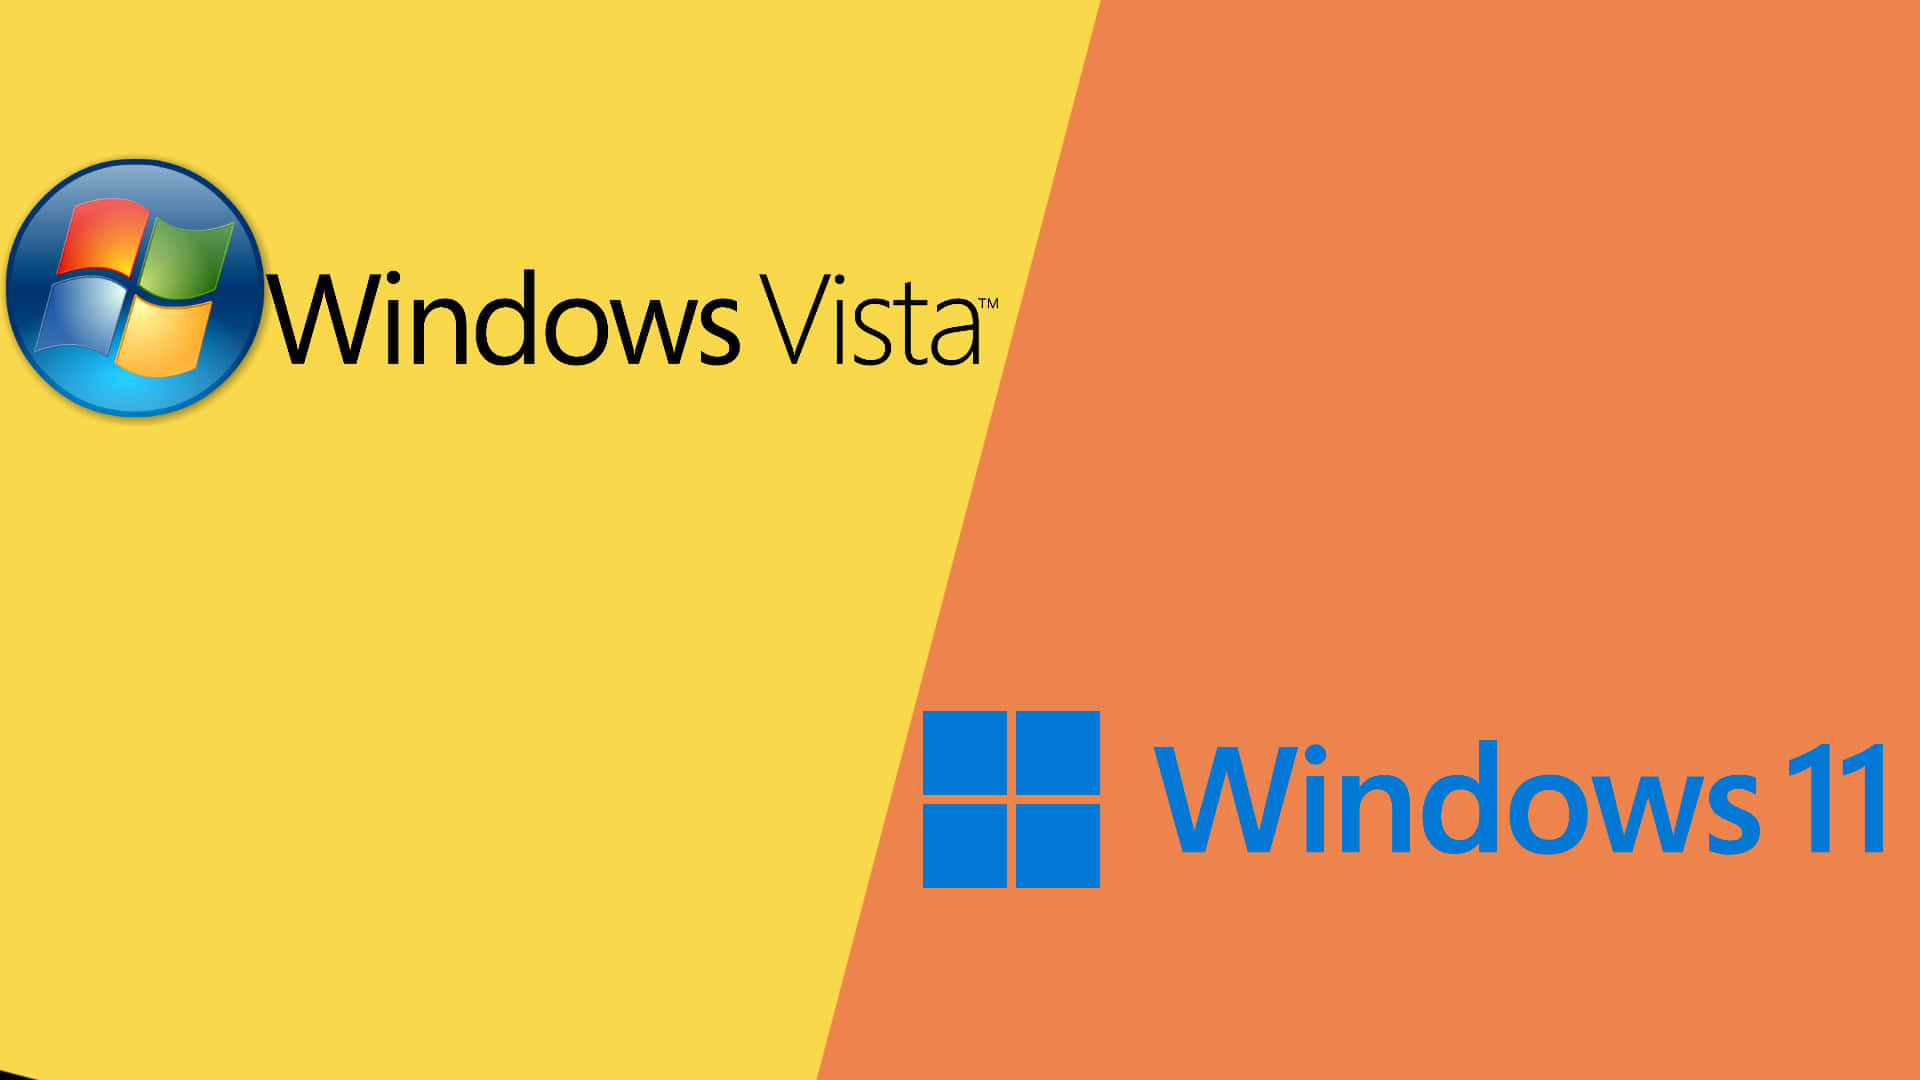 Billeder af rullende bakker fra Windows Vista